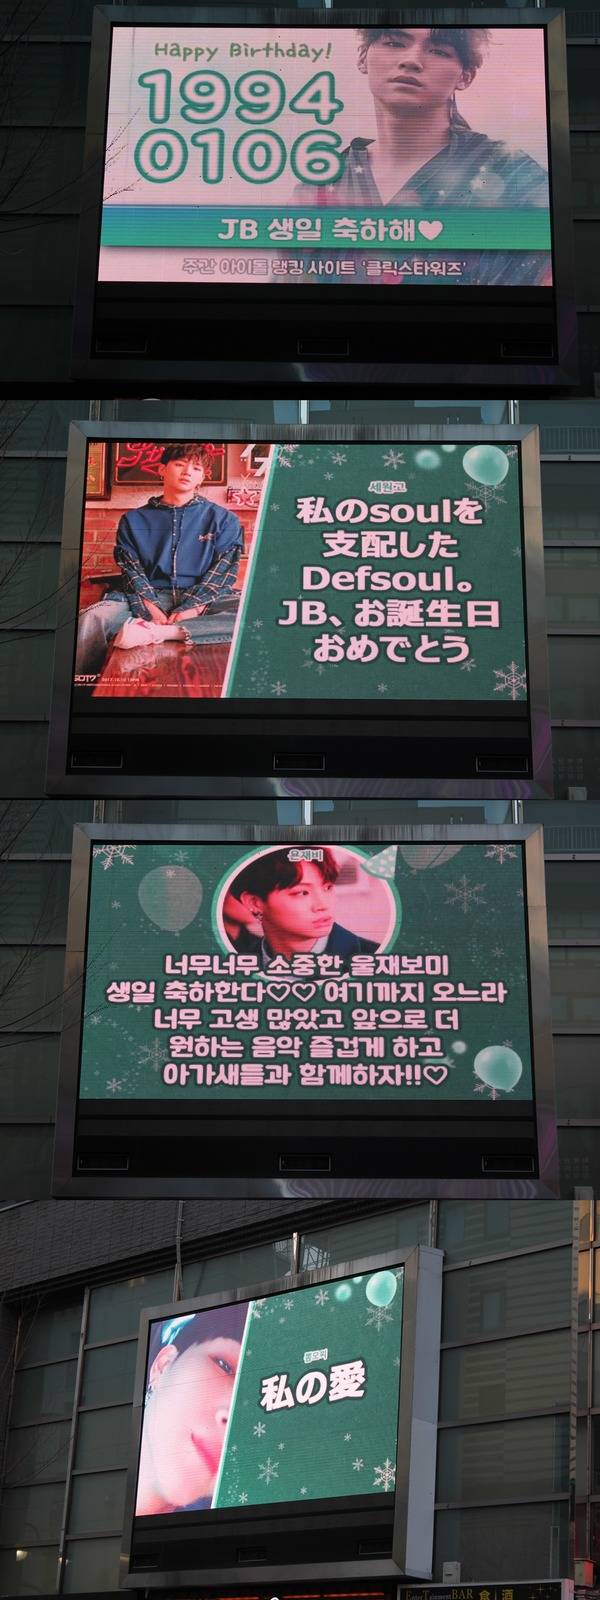 JB, 생일 축하해 그룹 갓세븐 JB 생일을 맞아 팬들이 한국과 일본에 축하 전광판을 꾸몄다. /클릭스타워즈 제공